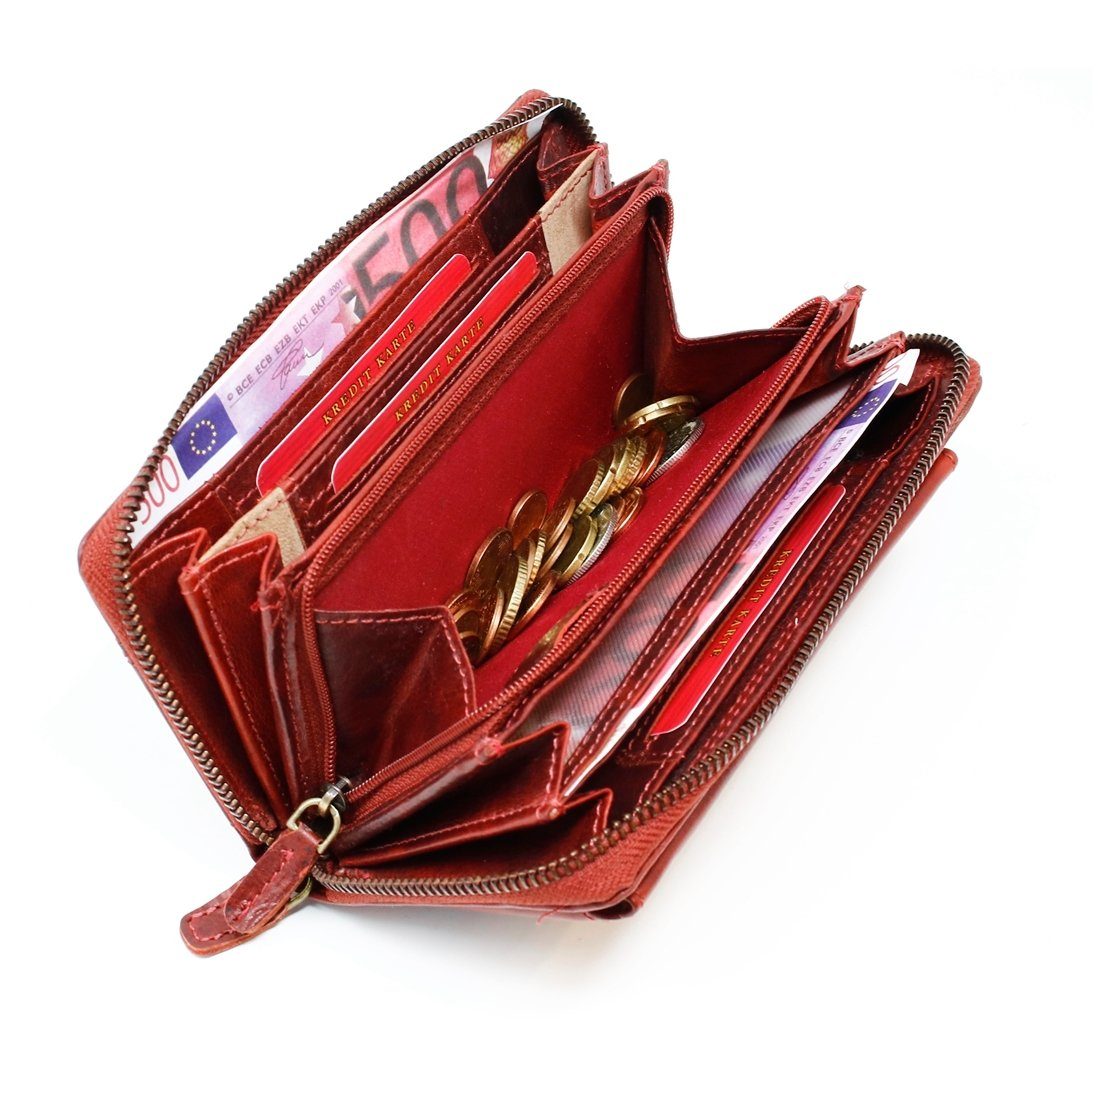 Reißverschluss, Brieftasche«, SHG Münzfach, Börse Portmonee Damen Leder Schutz RFID Portemonnaie, Kreditkartenfächer, Geldbeutel Geldbörse